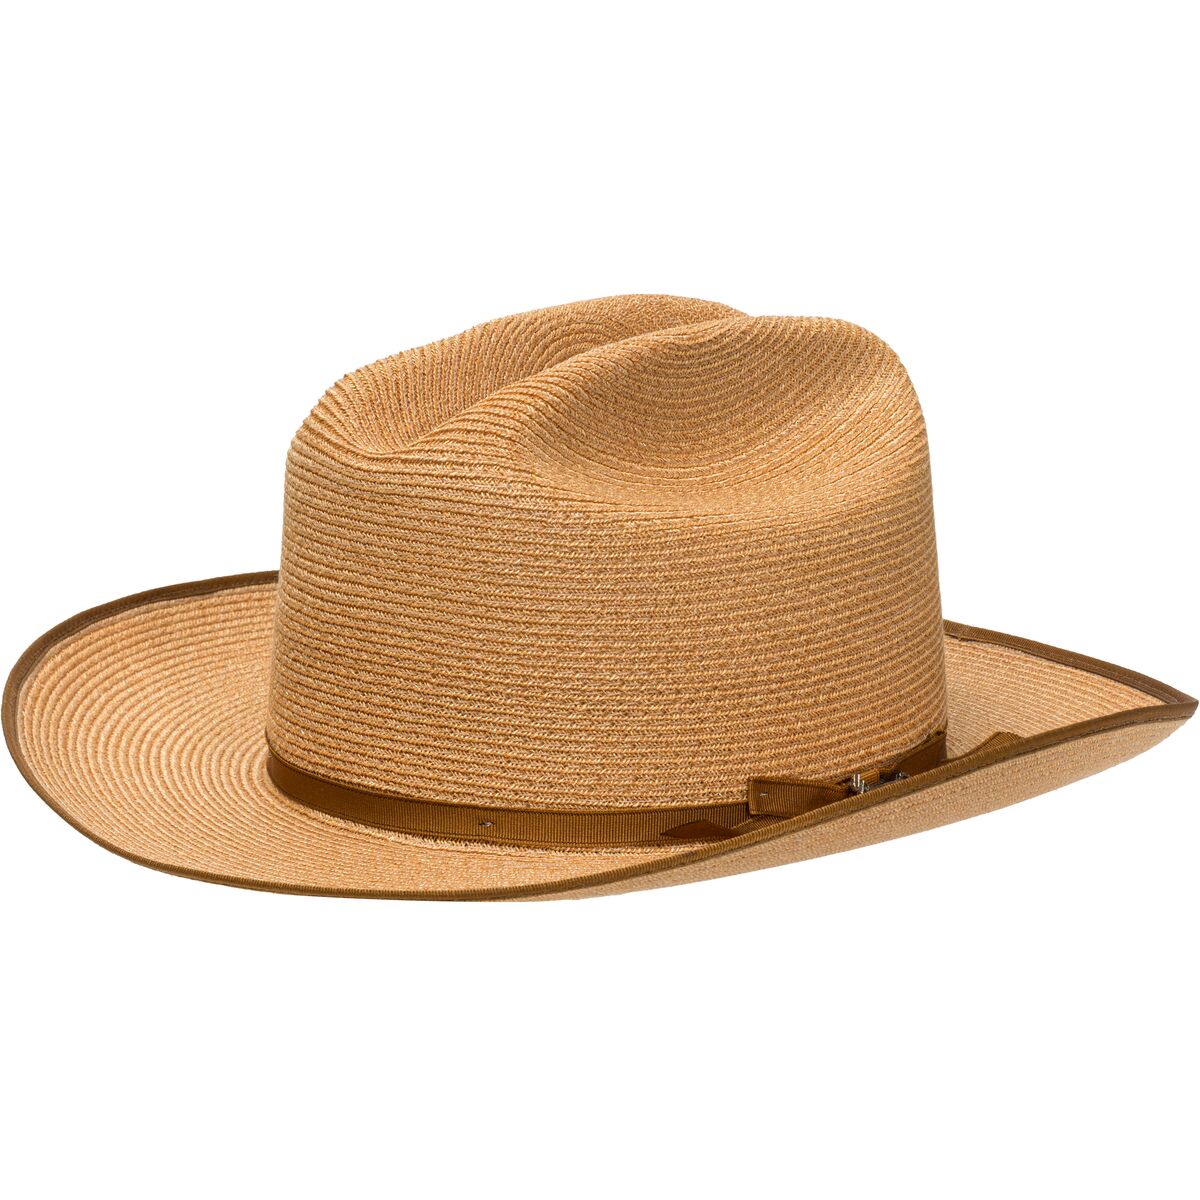 Open Road Hemp Straw Hat